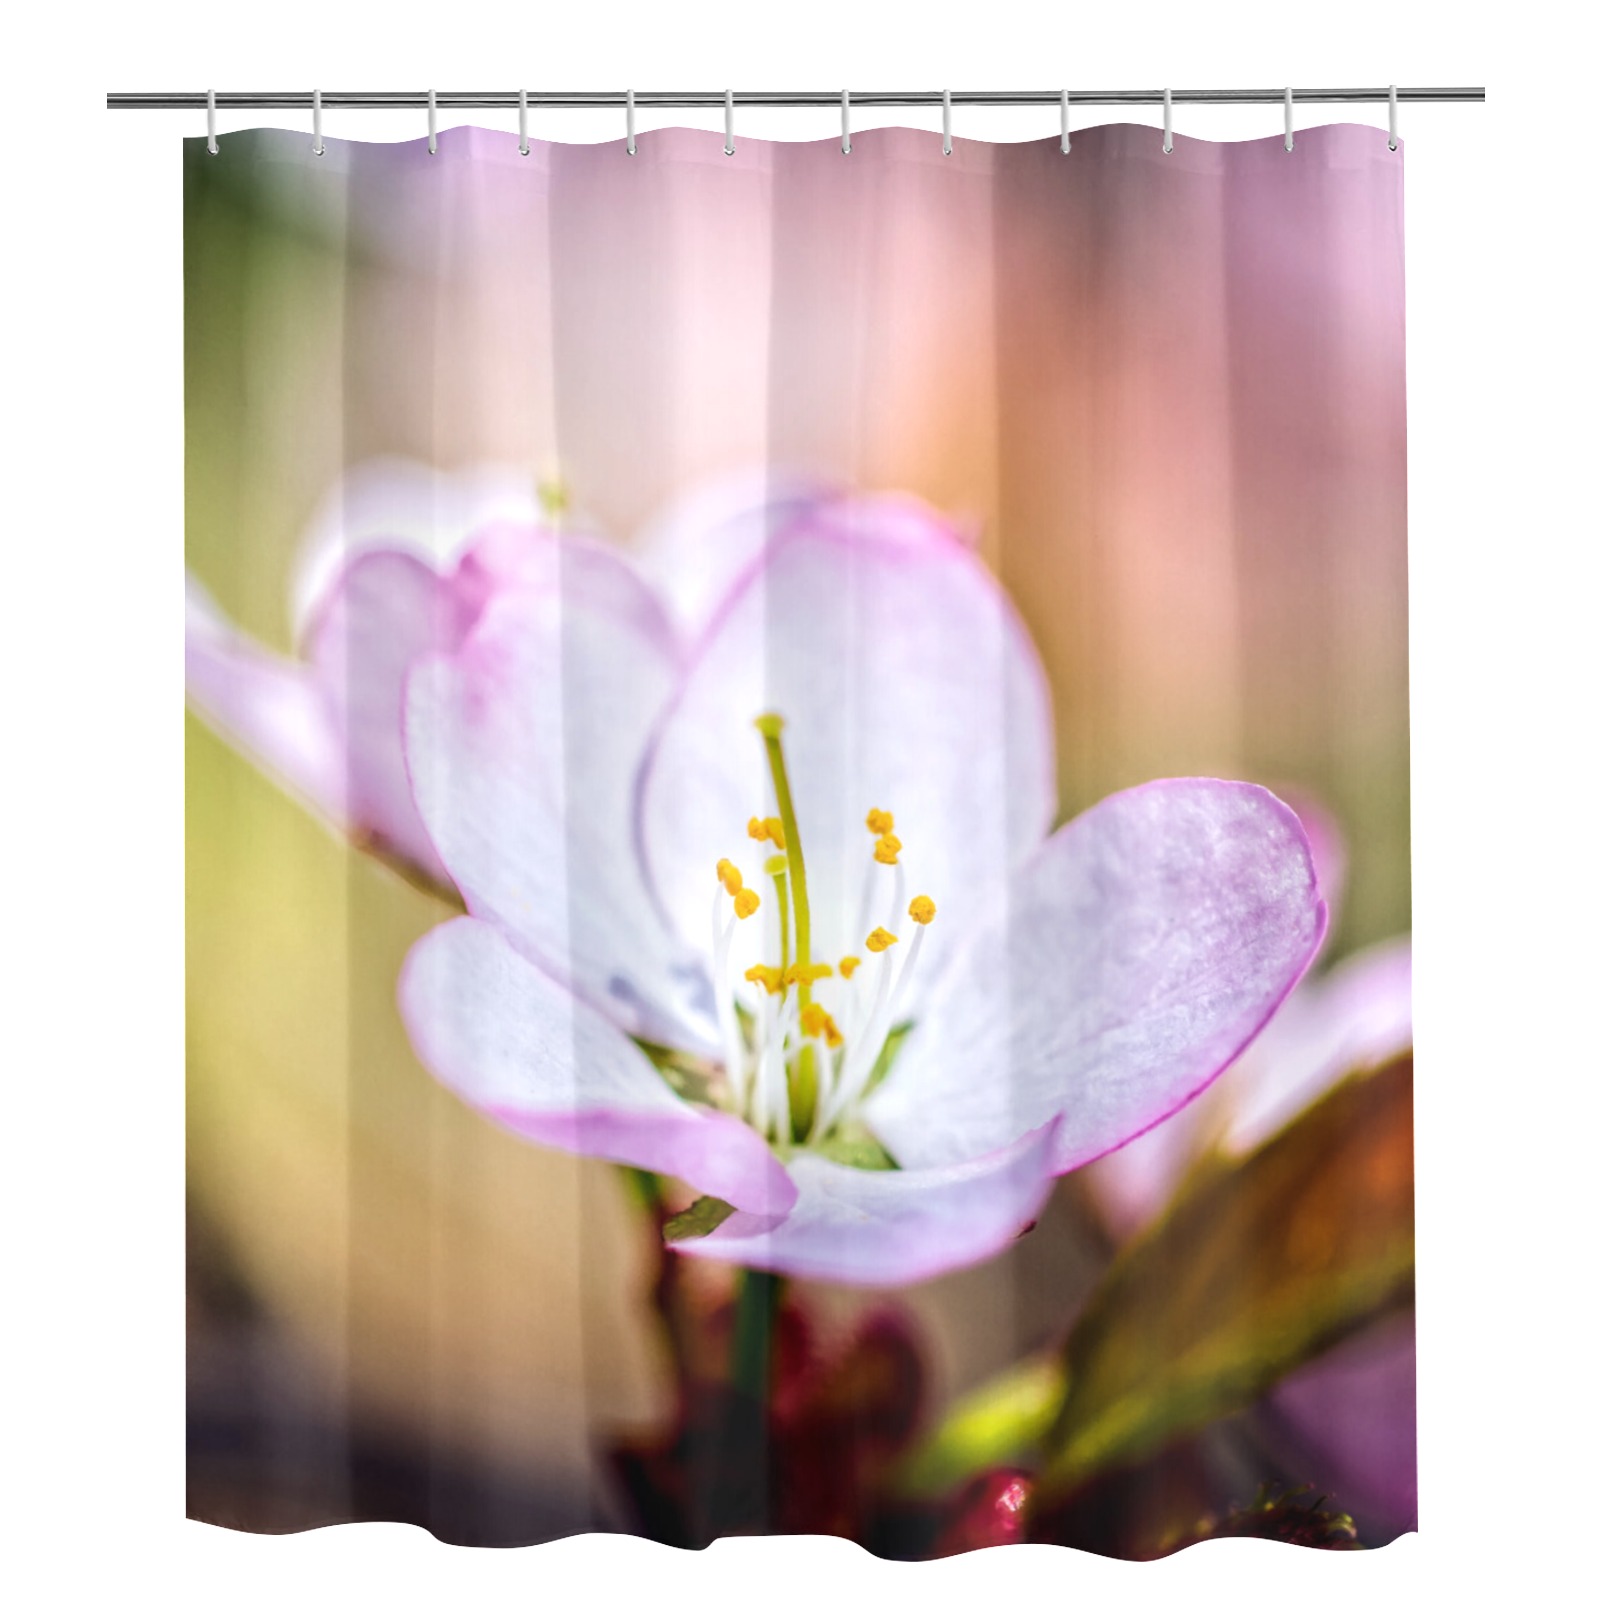 Splendid sakura Japanese cherry blossom flower. Shower Curtain 72"x84"